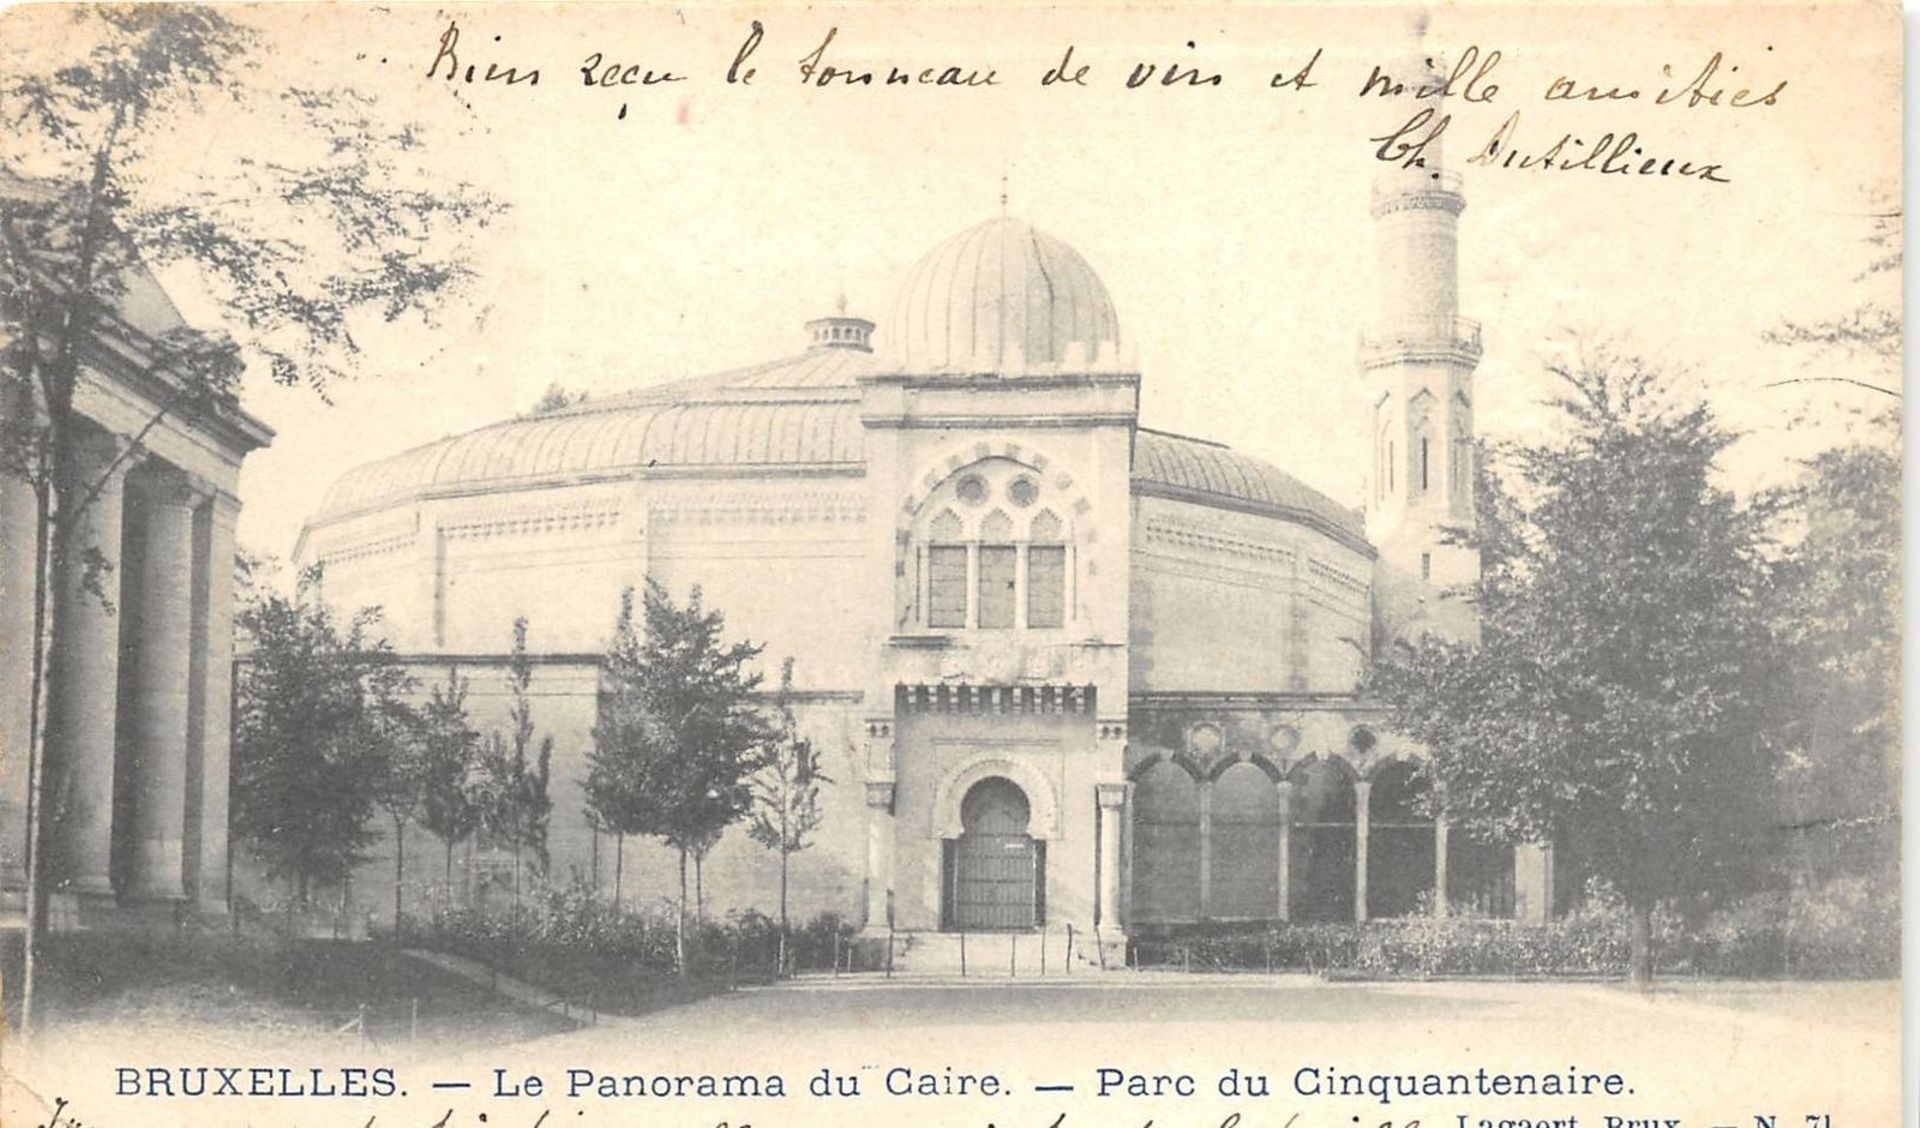 Le pavillon du Panorama du Caire lors de l’exposition de 1897… aujourd’hui devenu la grande mosquée de Bruxelles.